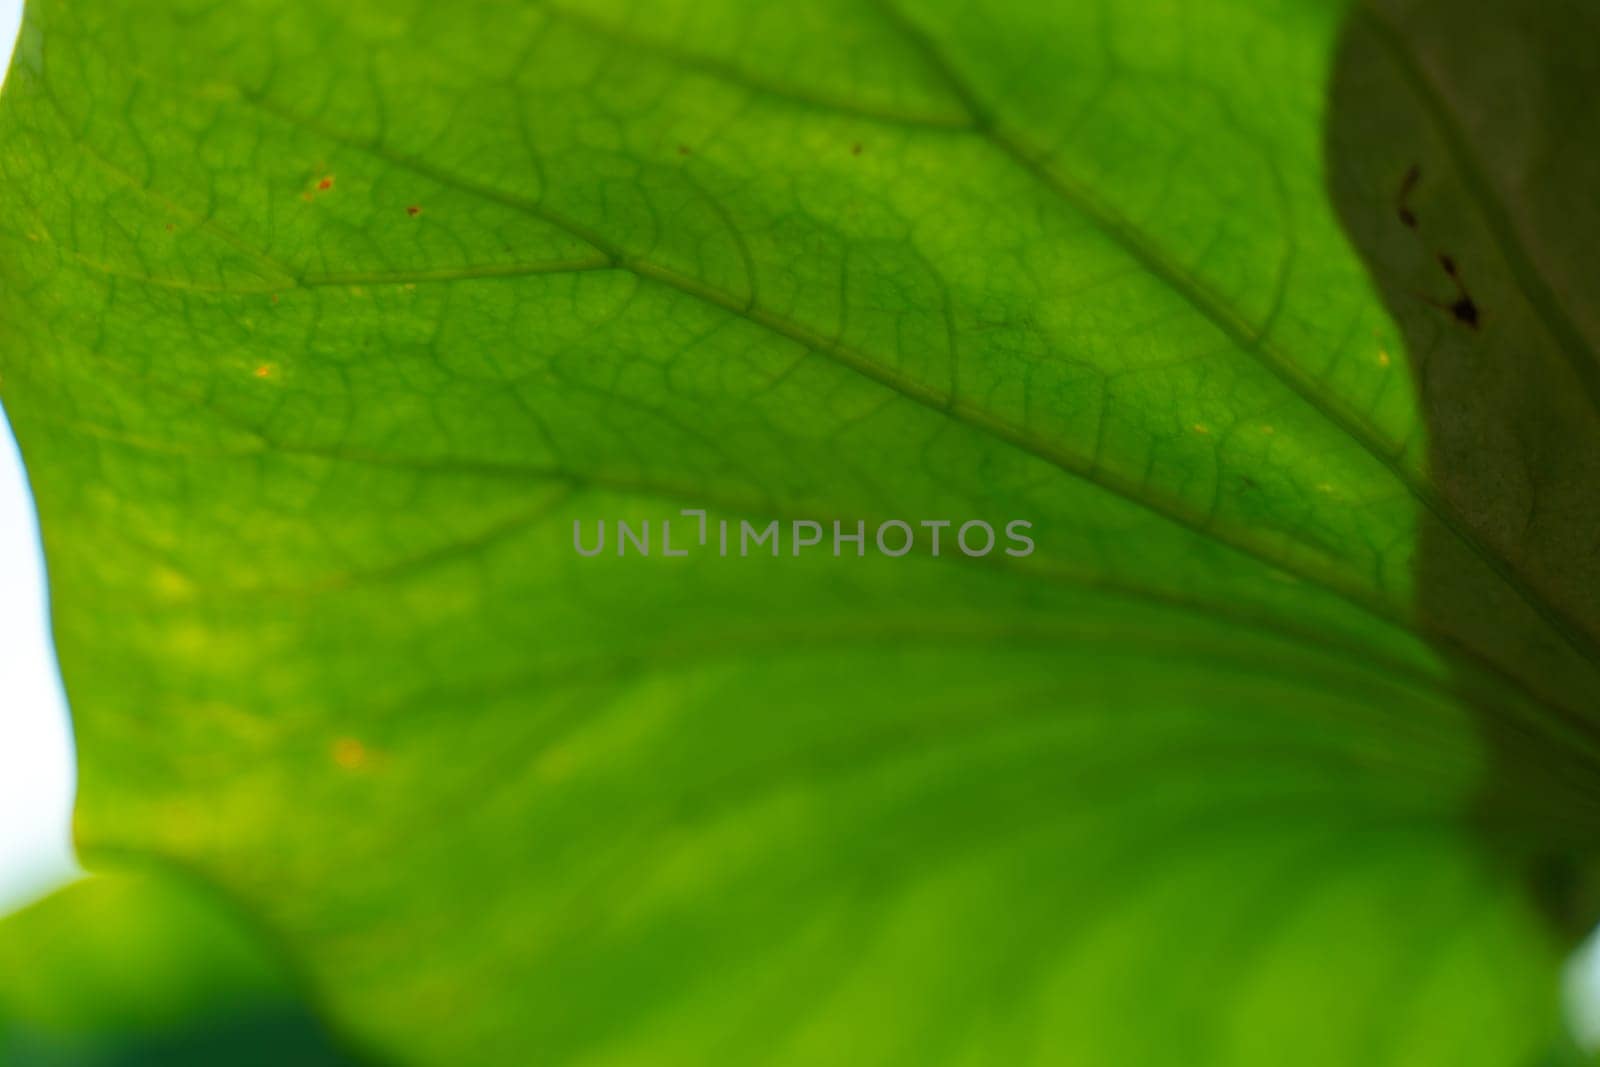 A leaf with a green stem and a dark green leaf/